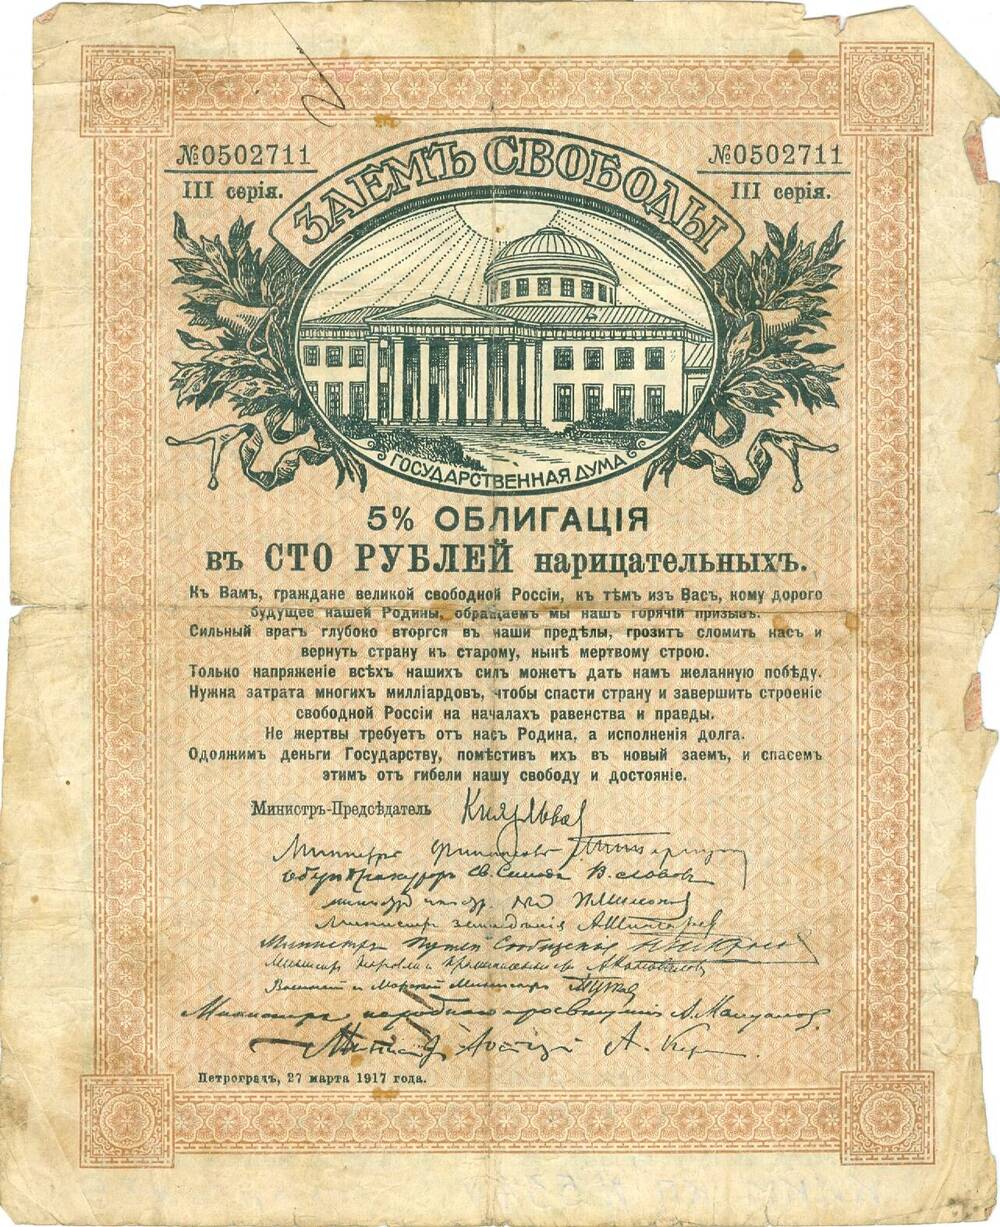 5% облигация Заем свободы достоинством 100 рублей периода Временного правительства 1917 г.